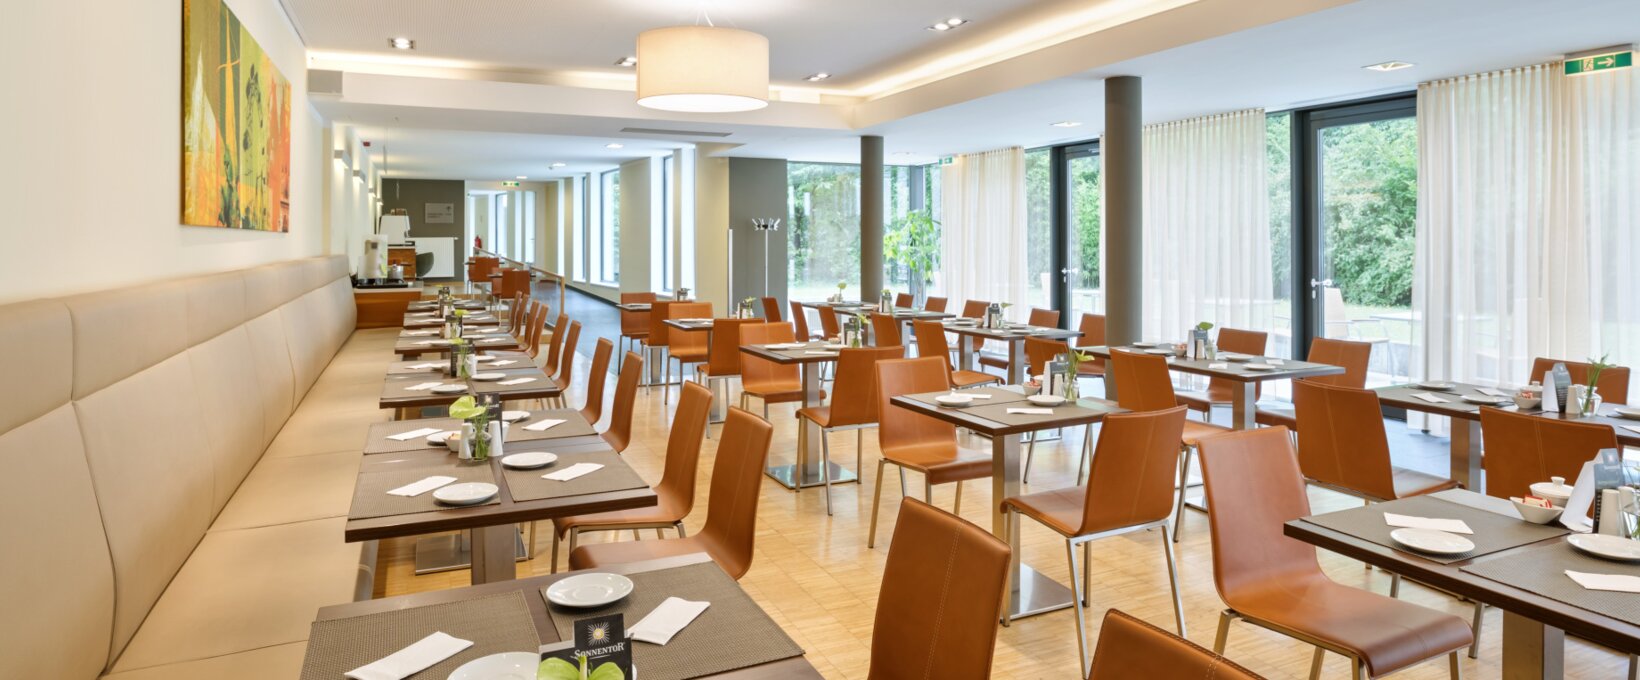 Frühstücksraum mit eingedeckten Tischen | Hotel beim Theresianum in Wien